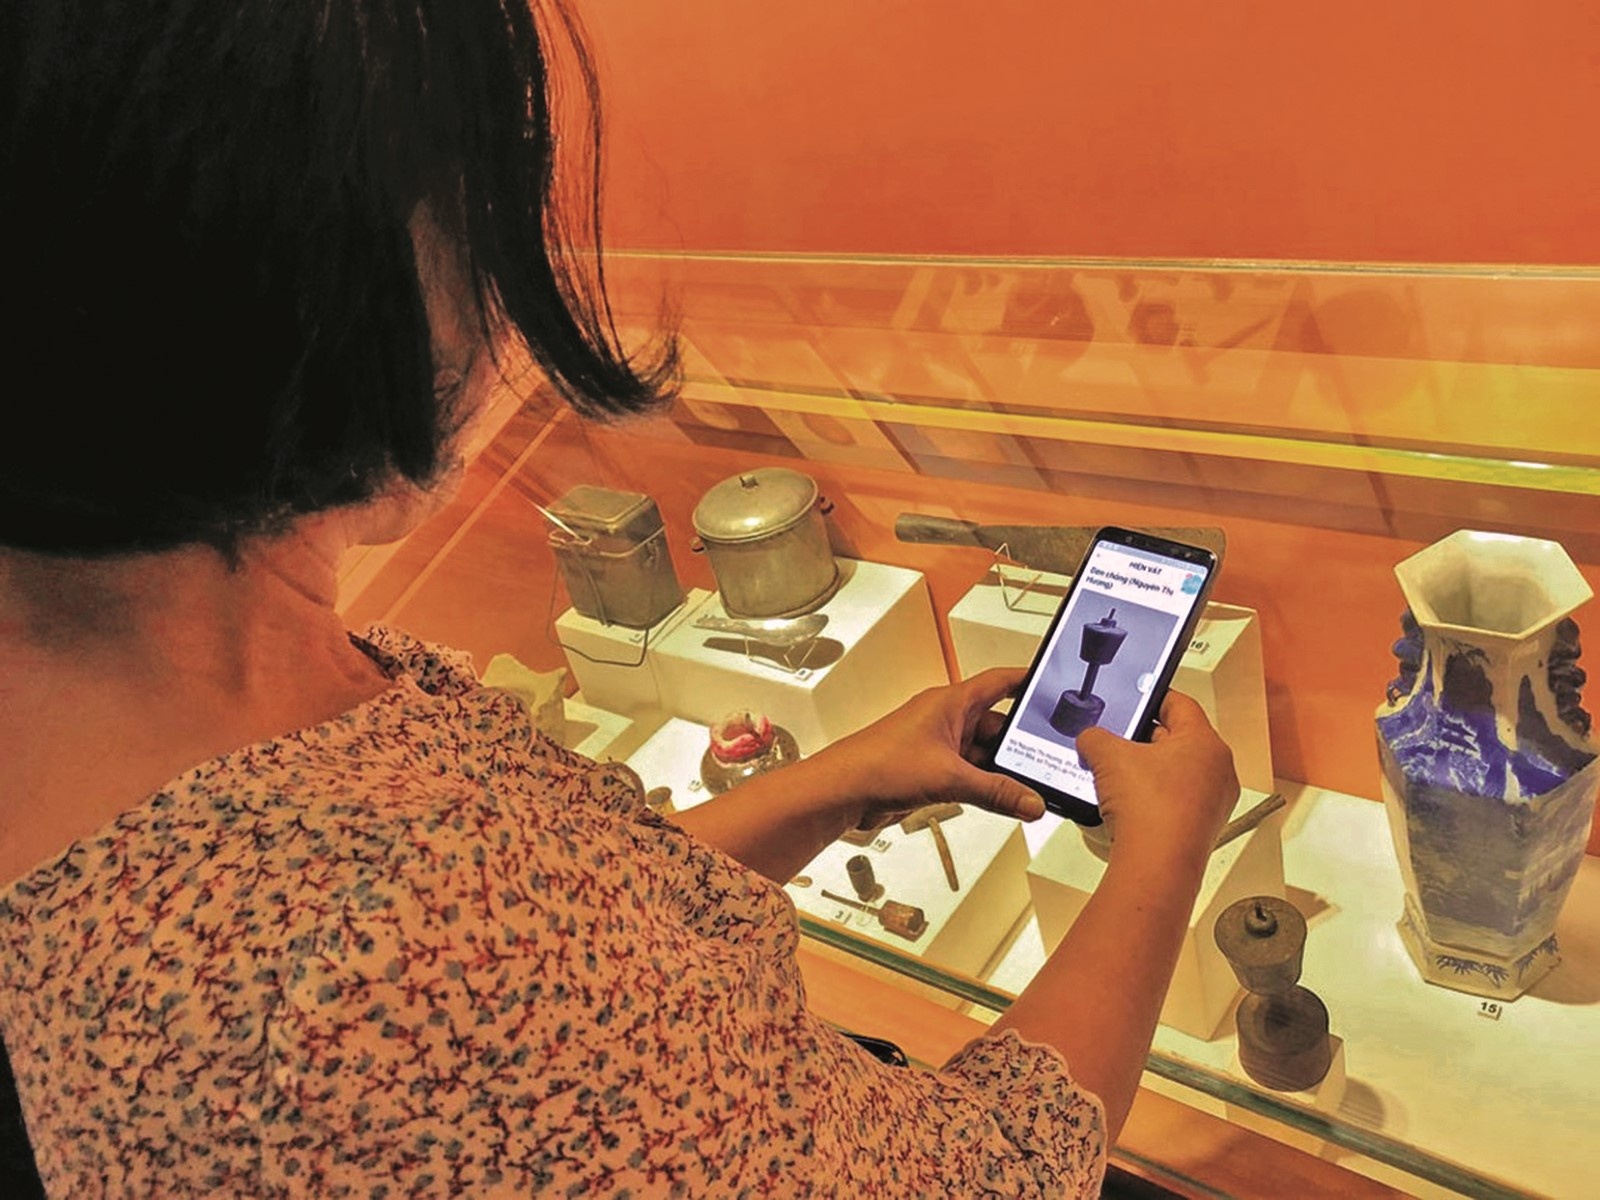 Nhiều bảo tàng ở nước ta đã ứng dụng công nghệ, giúp du khách có nhiều trải nghiệm mới mẻ